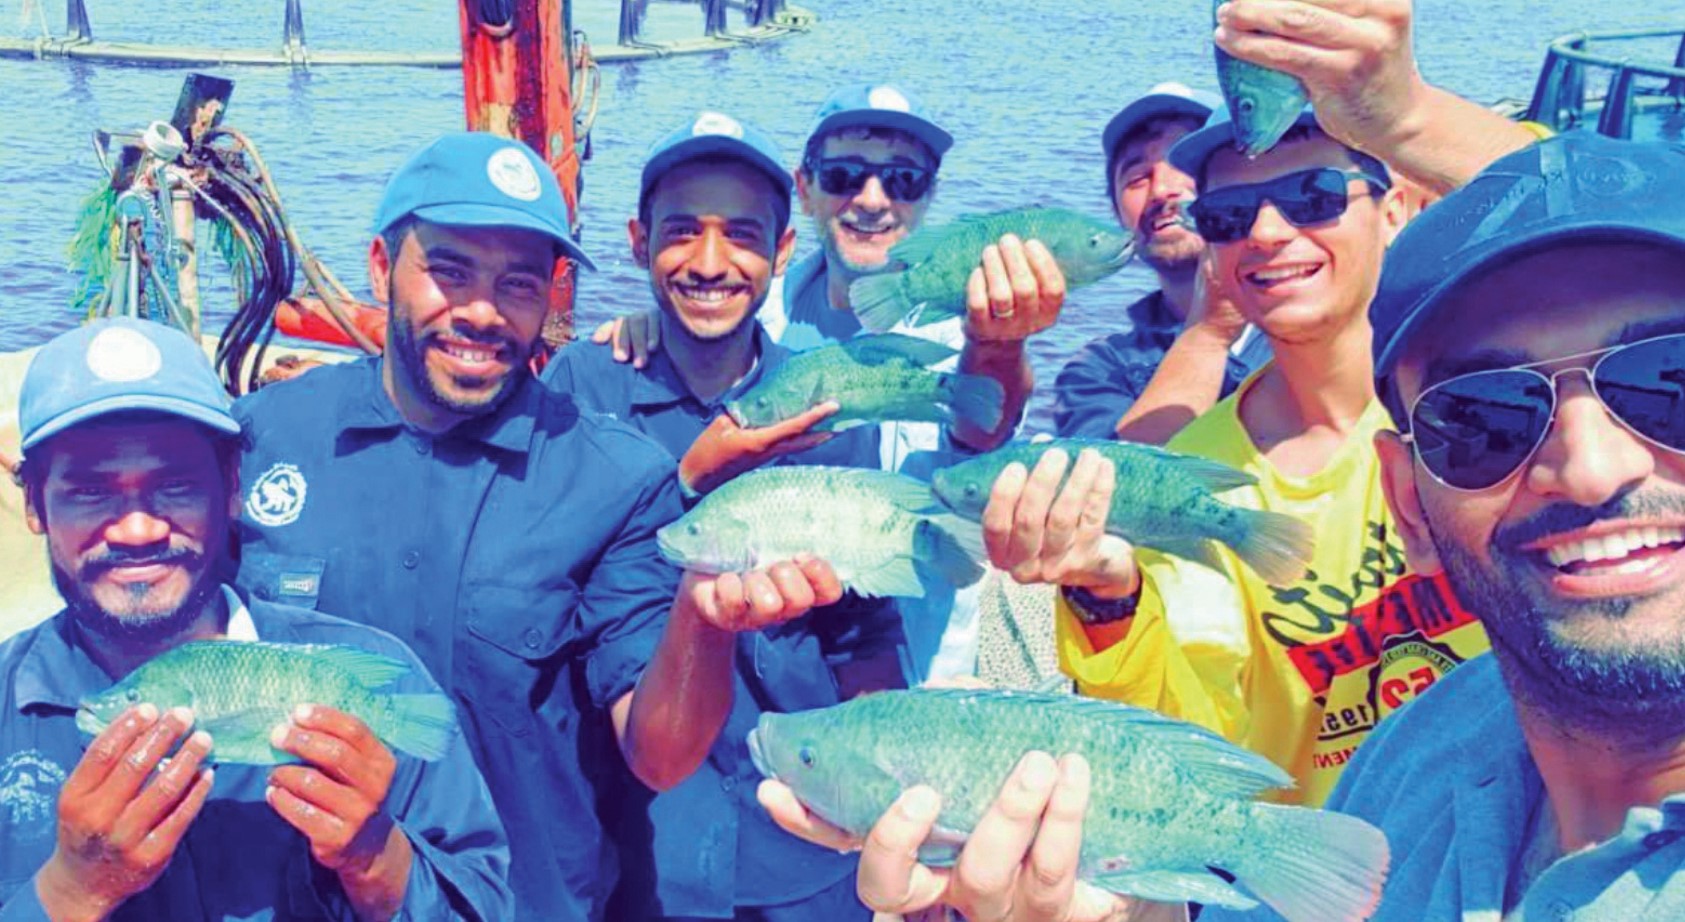 沙地阿拉伯开发新养殖鱼种 斯皮路勒吴郭鱼获积极推广 - 农牧世界